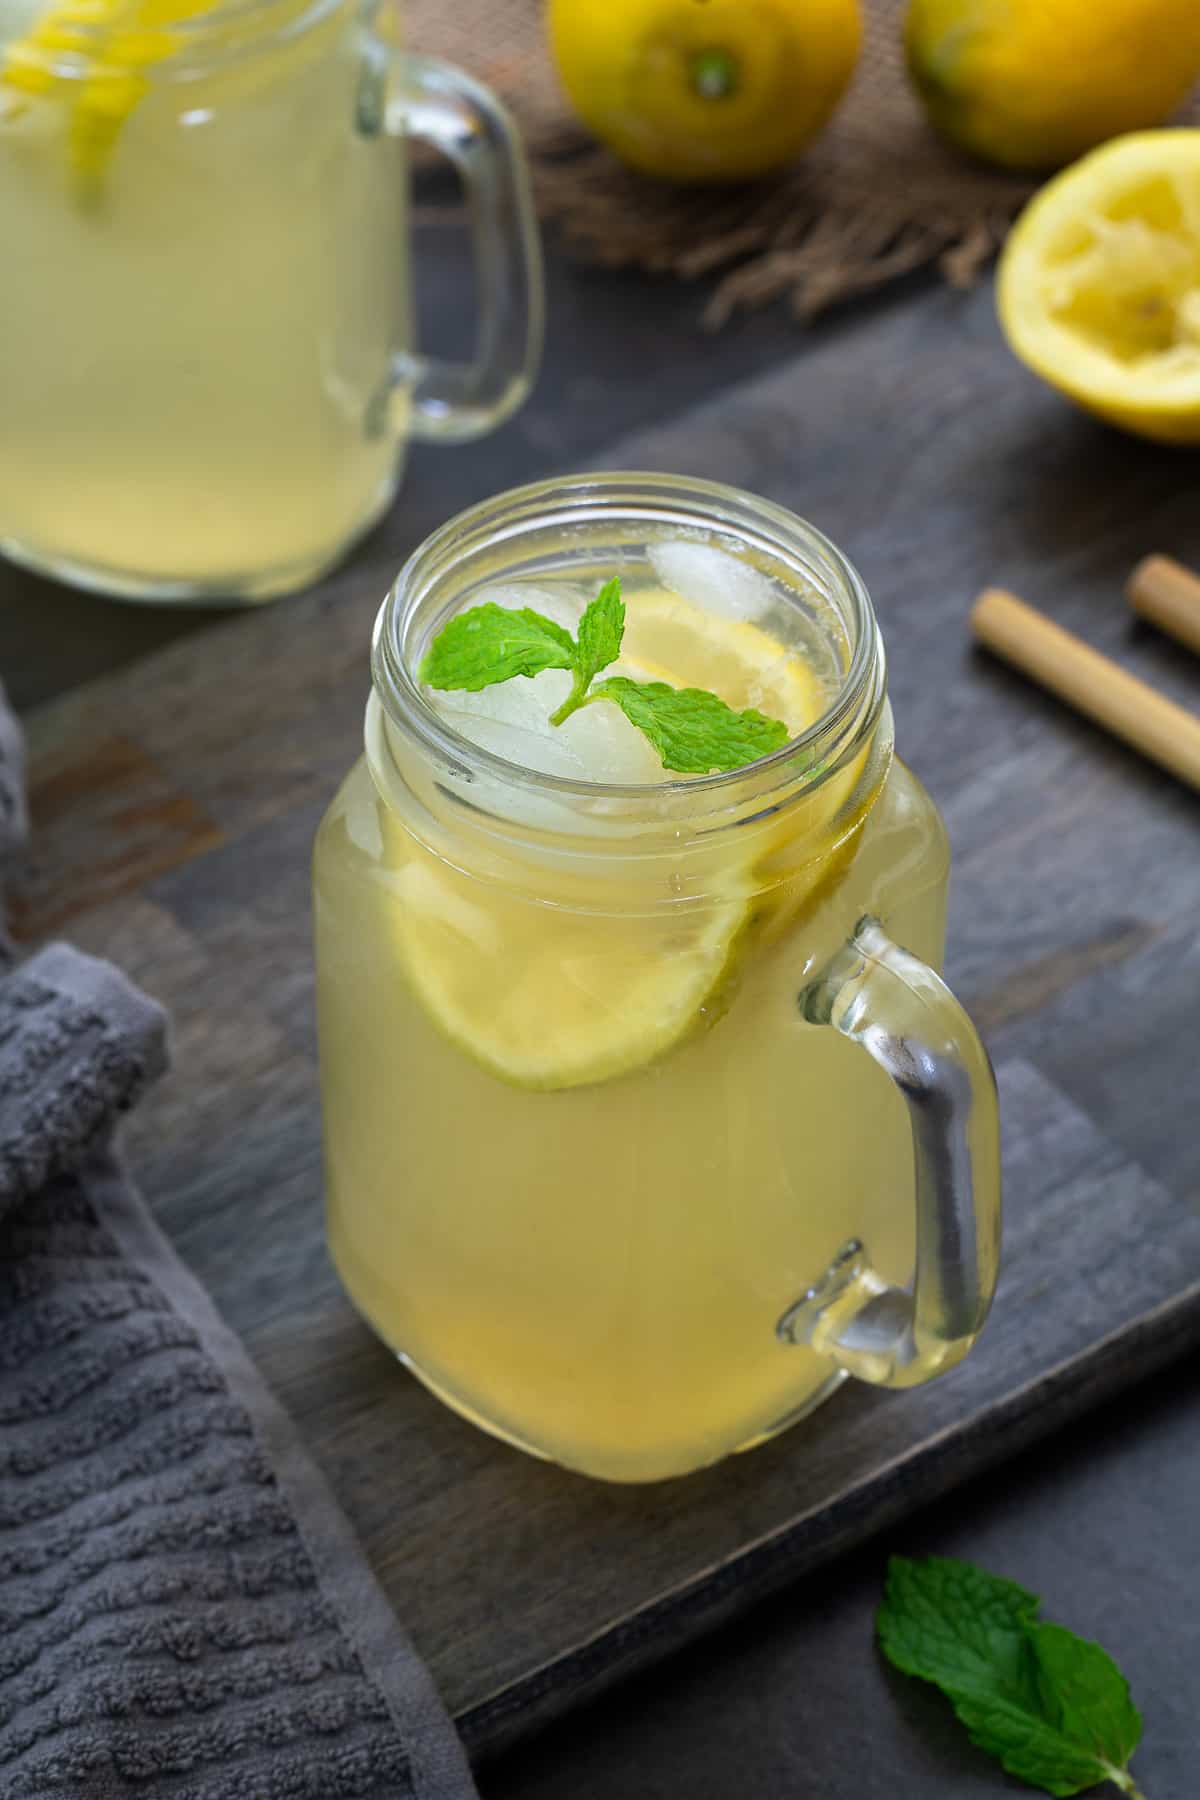 Limonada casera en una taza de vidrio para servir